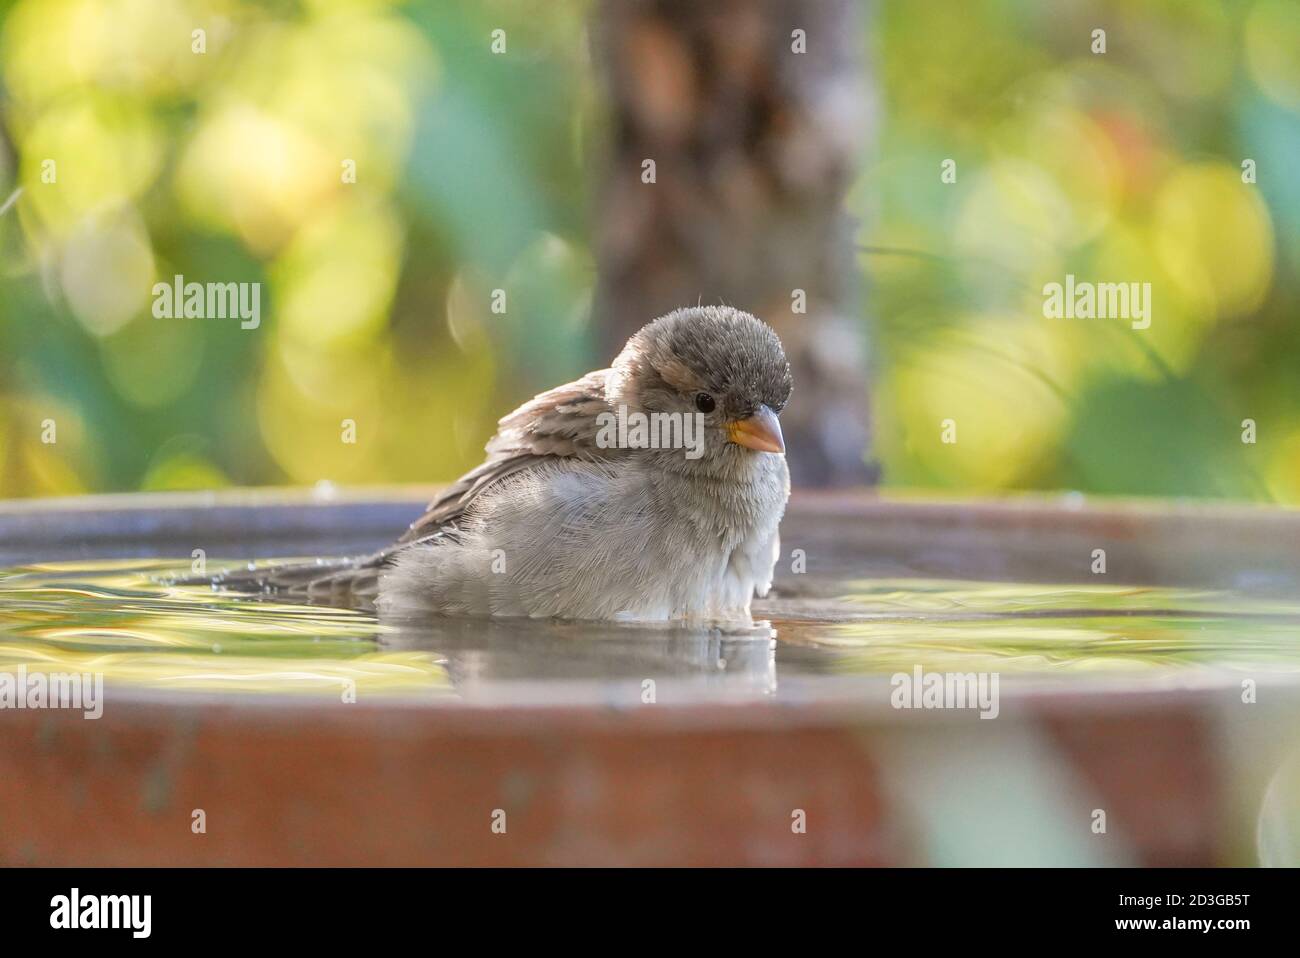 Junghaus Sparrow nahm ein Bad in Wasser Schüssel im Garten. Stockfoto